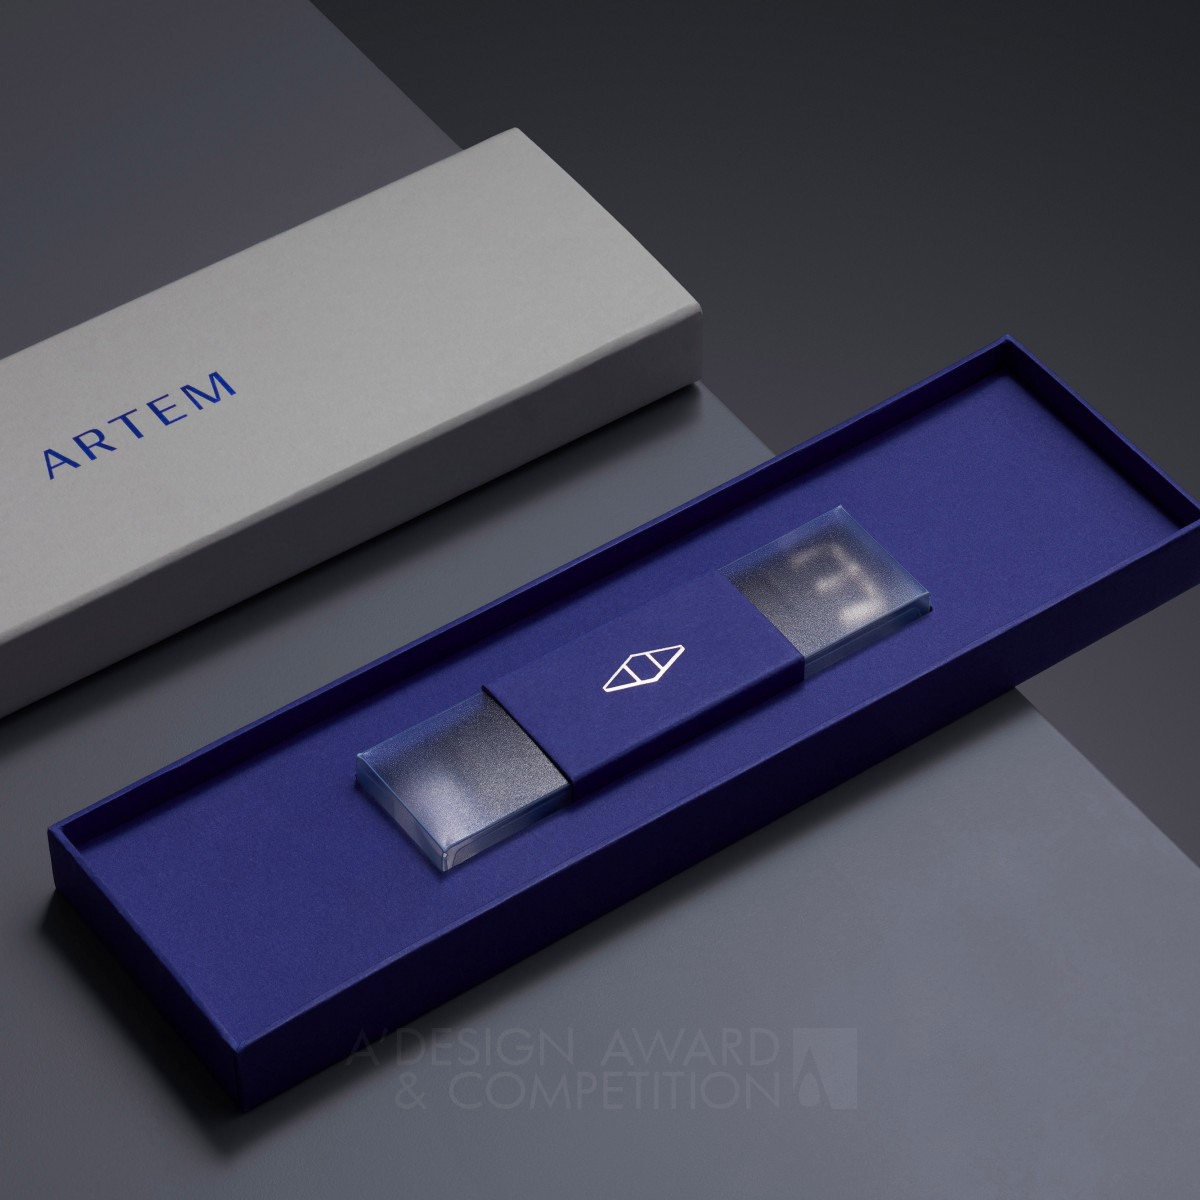 Artem Luxury Watch Straps : Un Packaging de Luxe pour les Passionnés de Montres